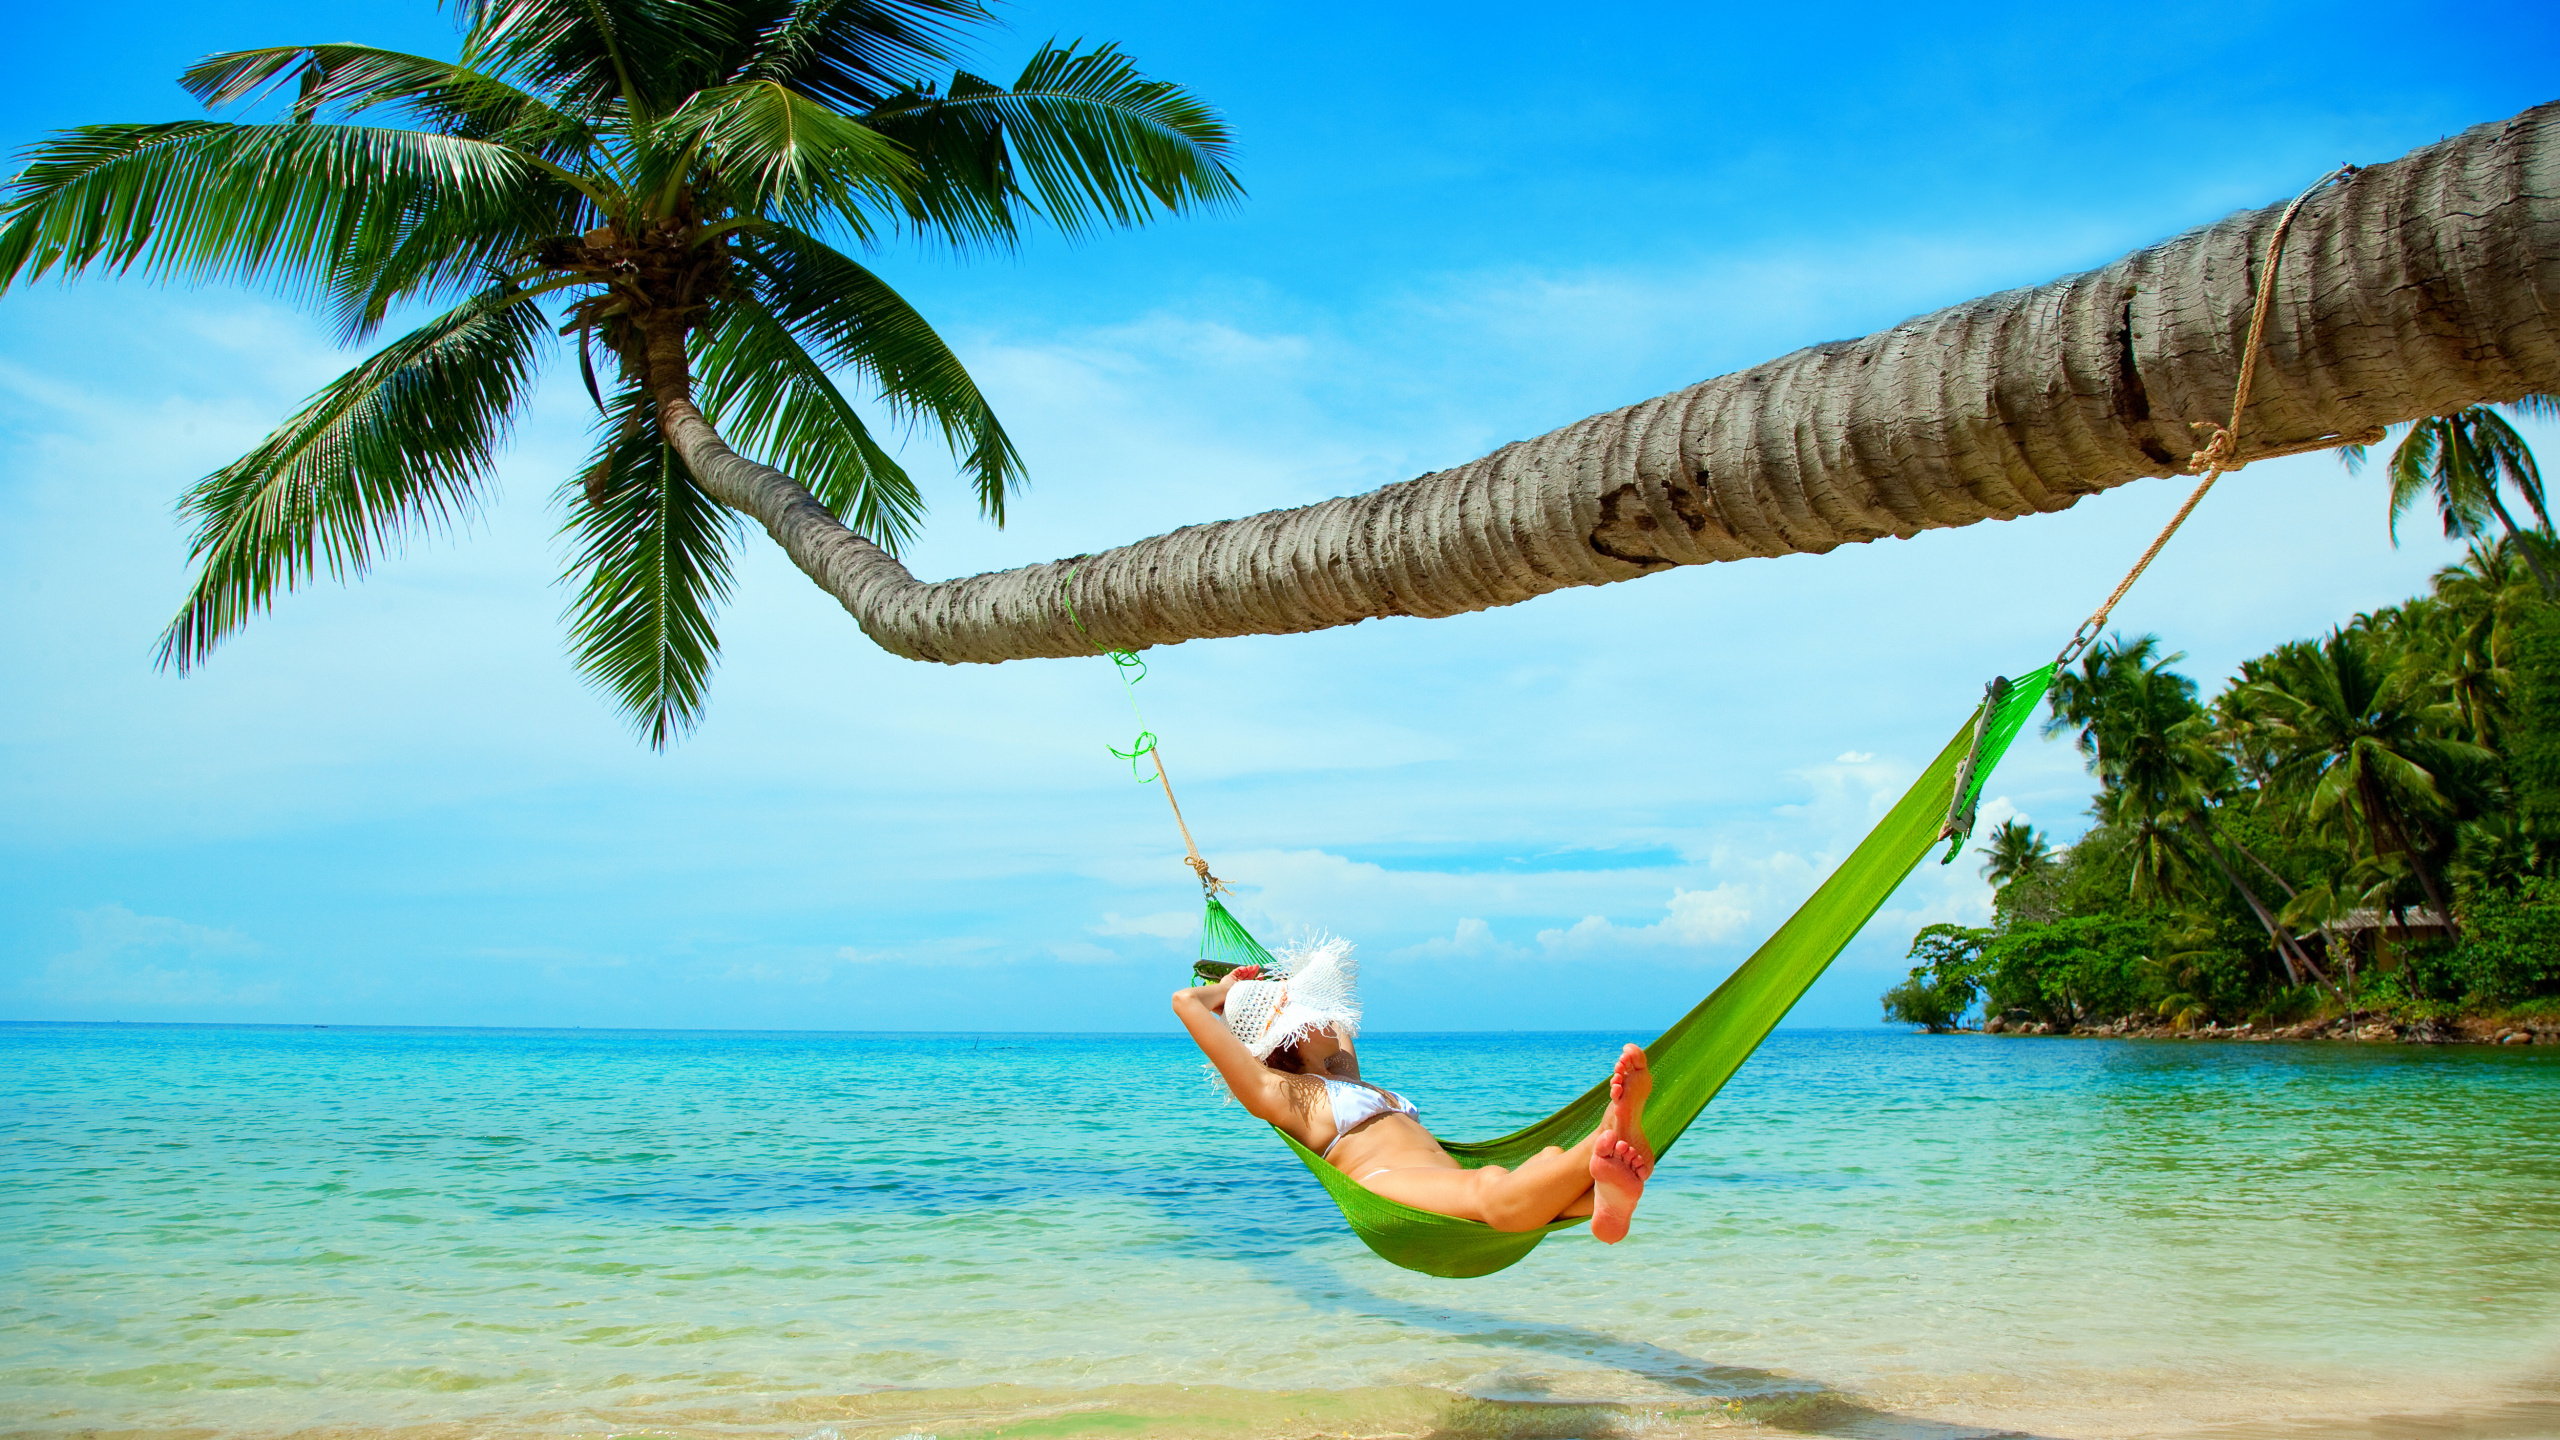 吊床, 大海, 热带地区, 度假, 加勒比 壁纸 2560x1440 允许